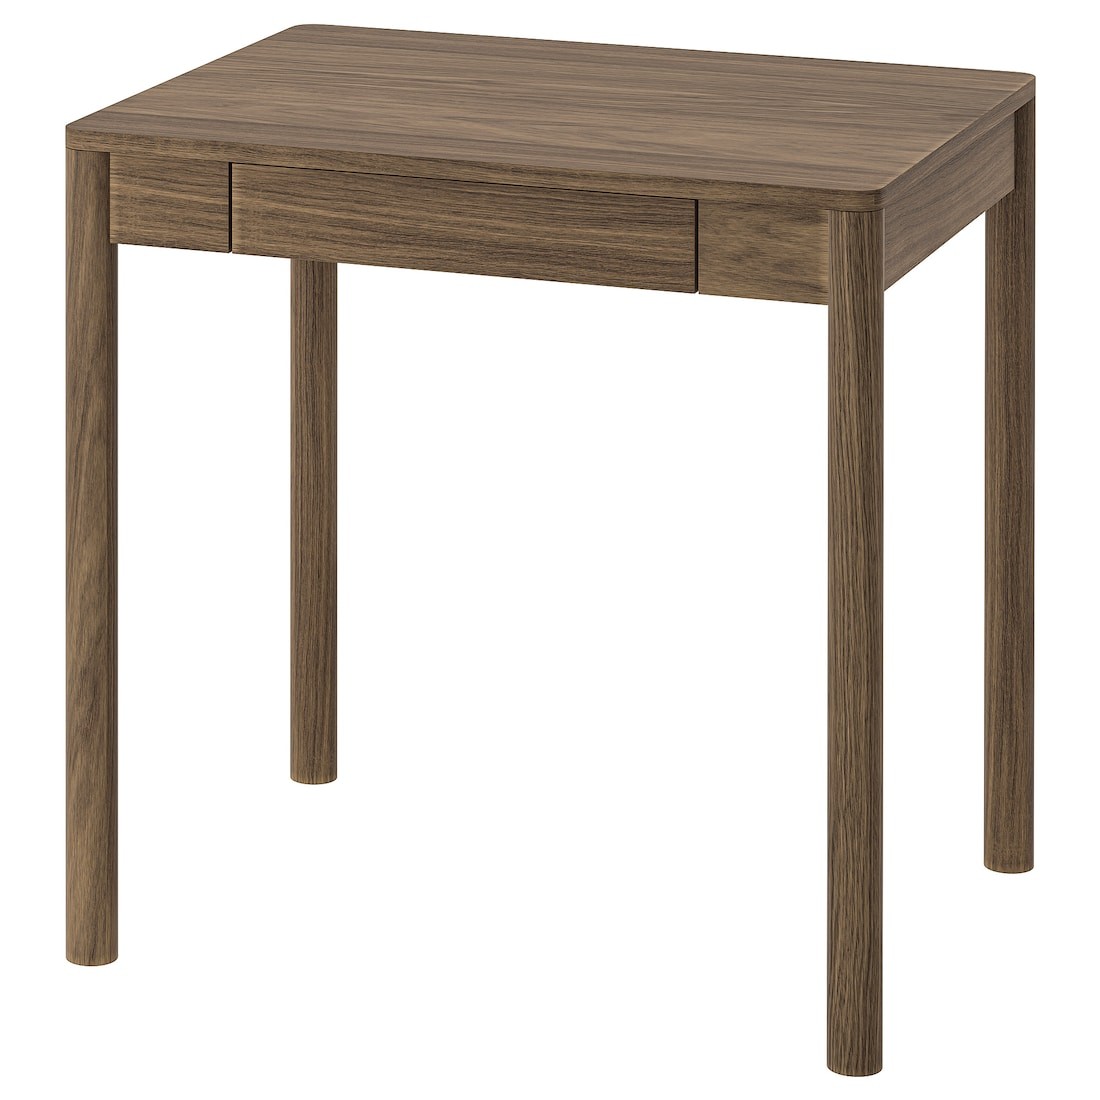 TONSTAD Письменный стол, коричневый дубовый шпон, 75x60 см